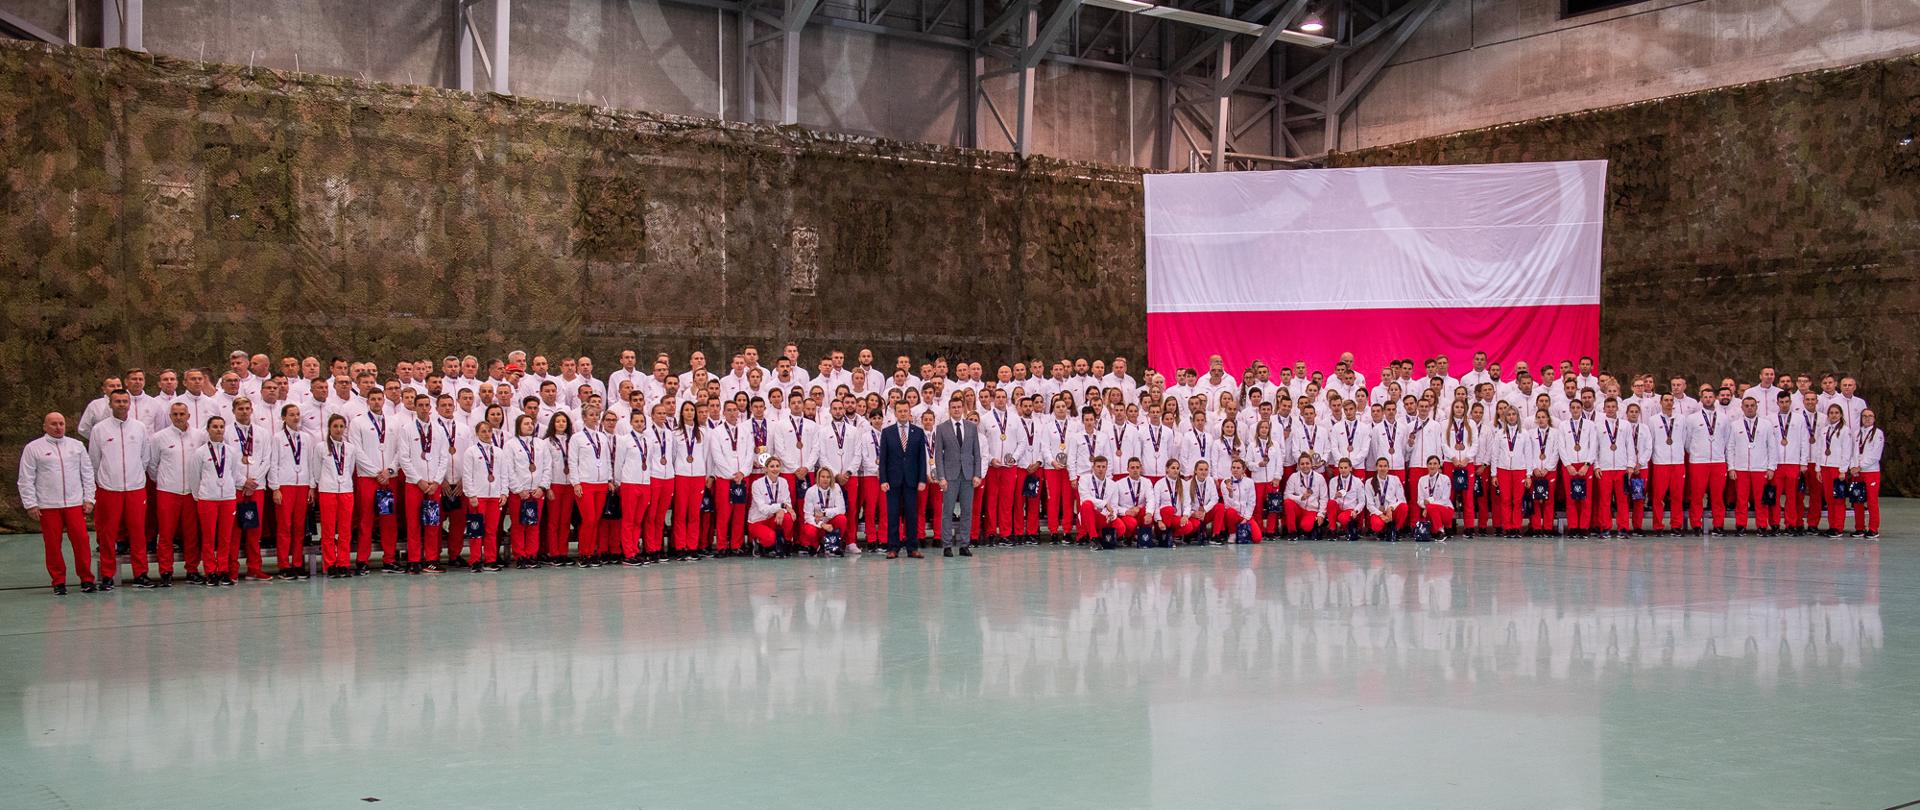 60 medali dla Polski podczas VII Światowych Wojskowych Igrzysk Sportowych w Wuhan